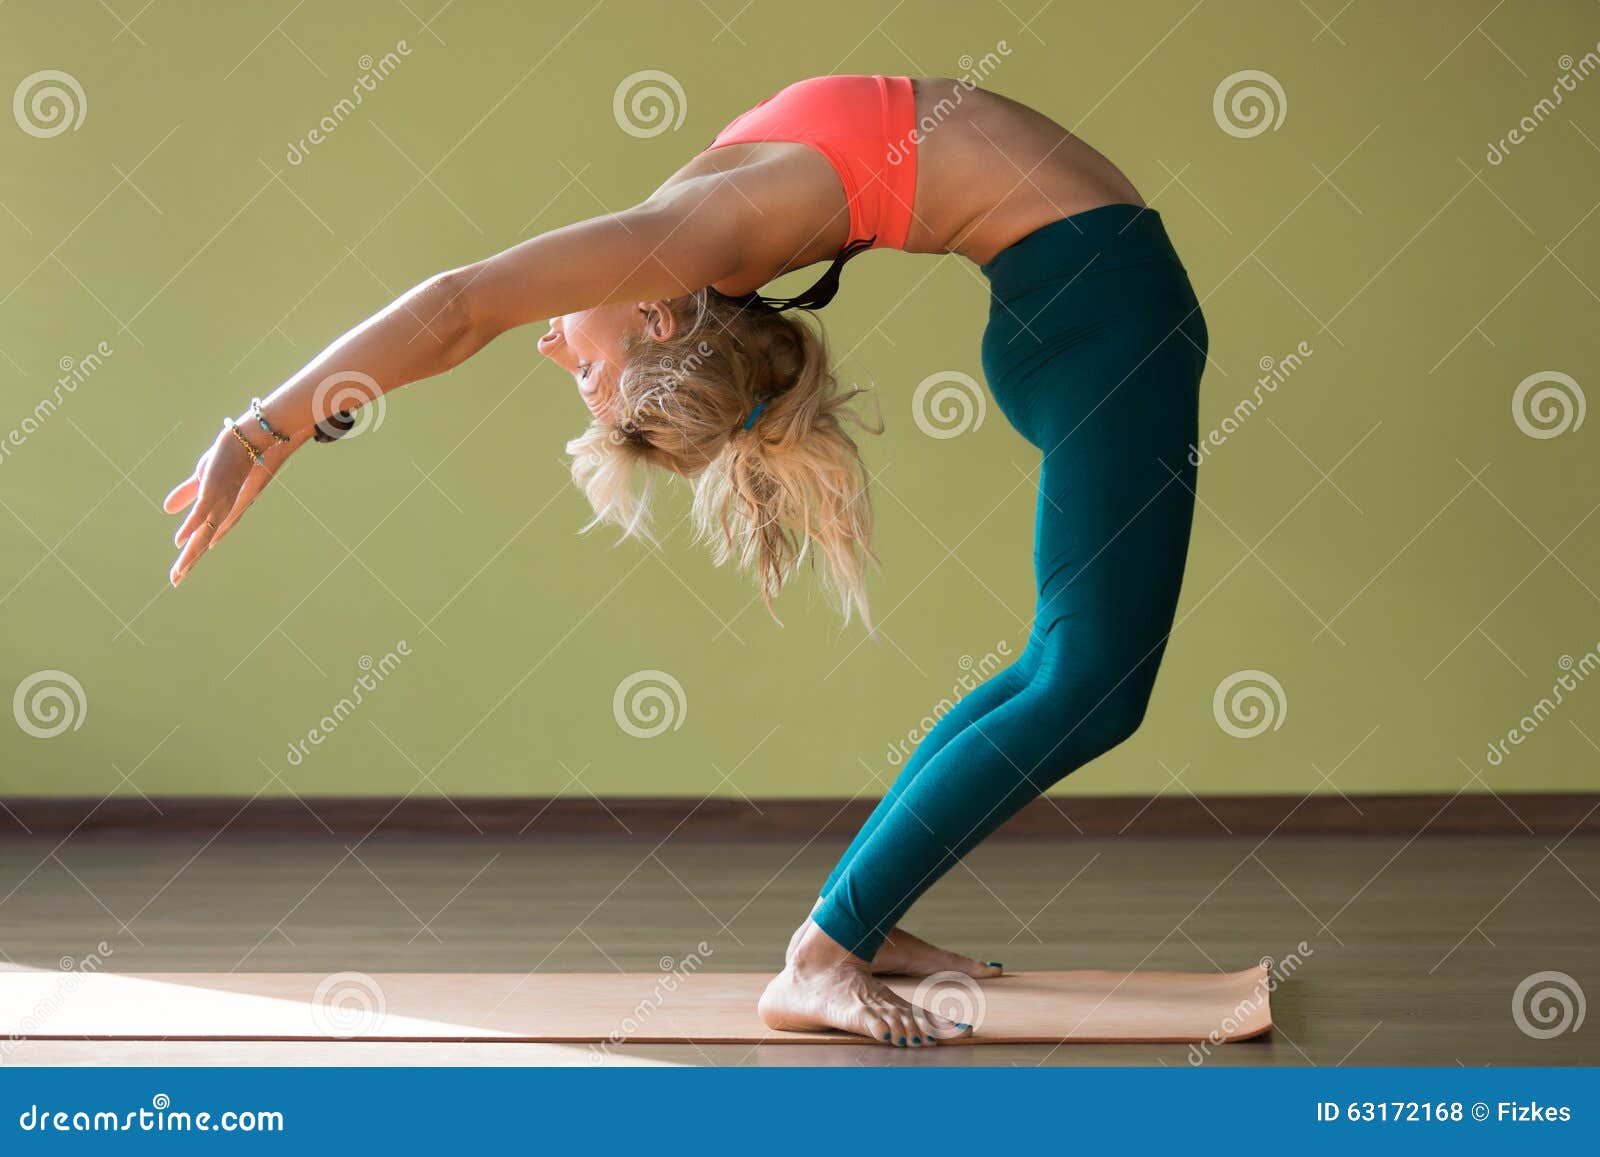 Half Wheel pose stock photo. Image of flexibility, practice - 63172168